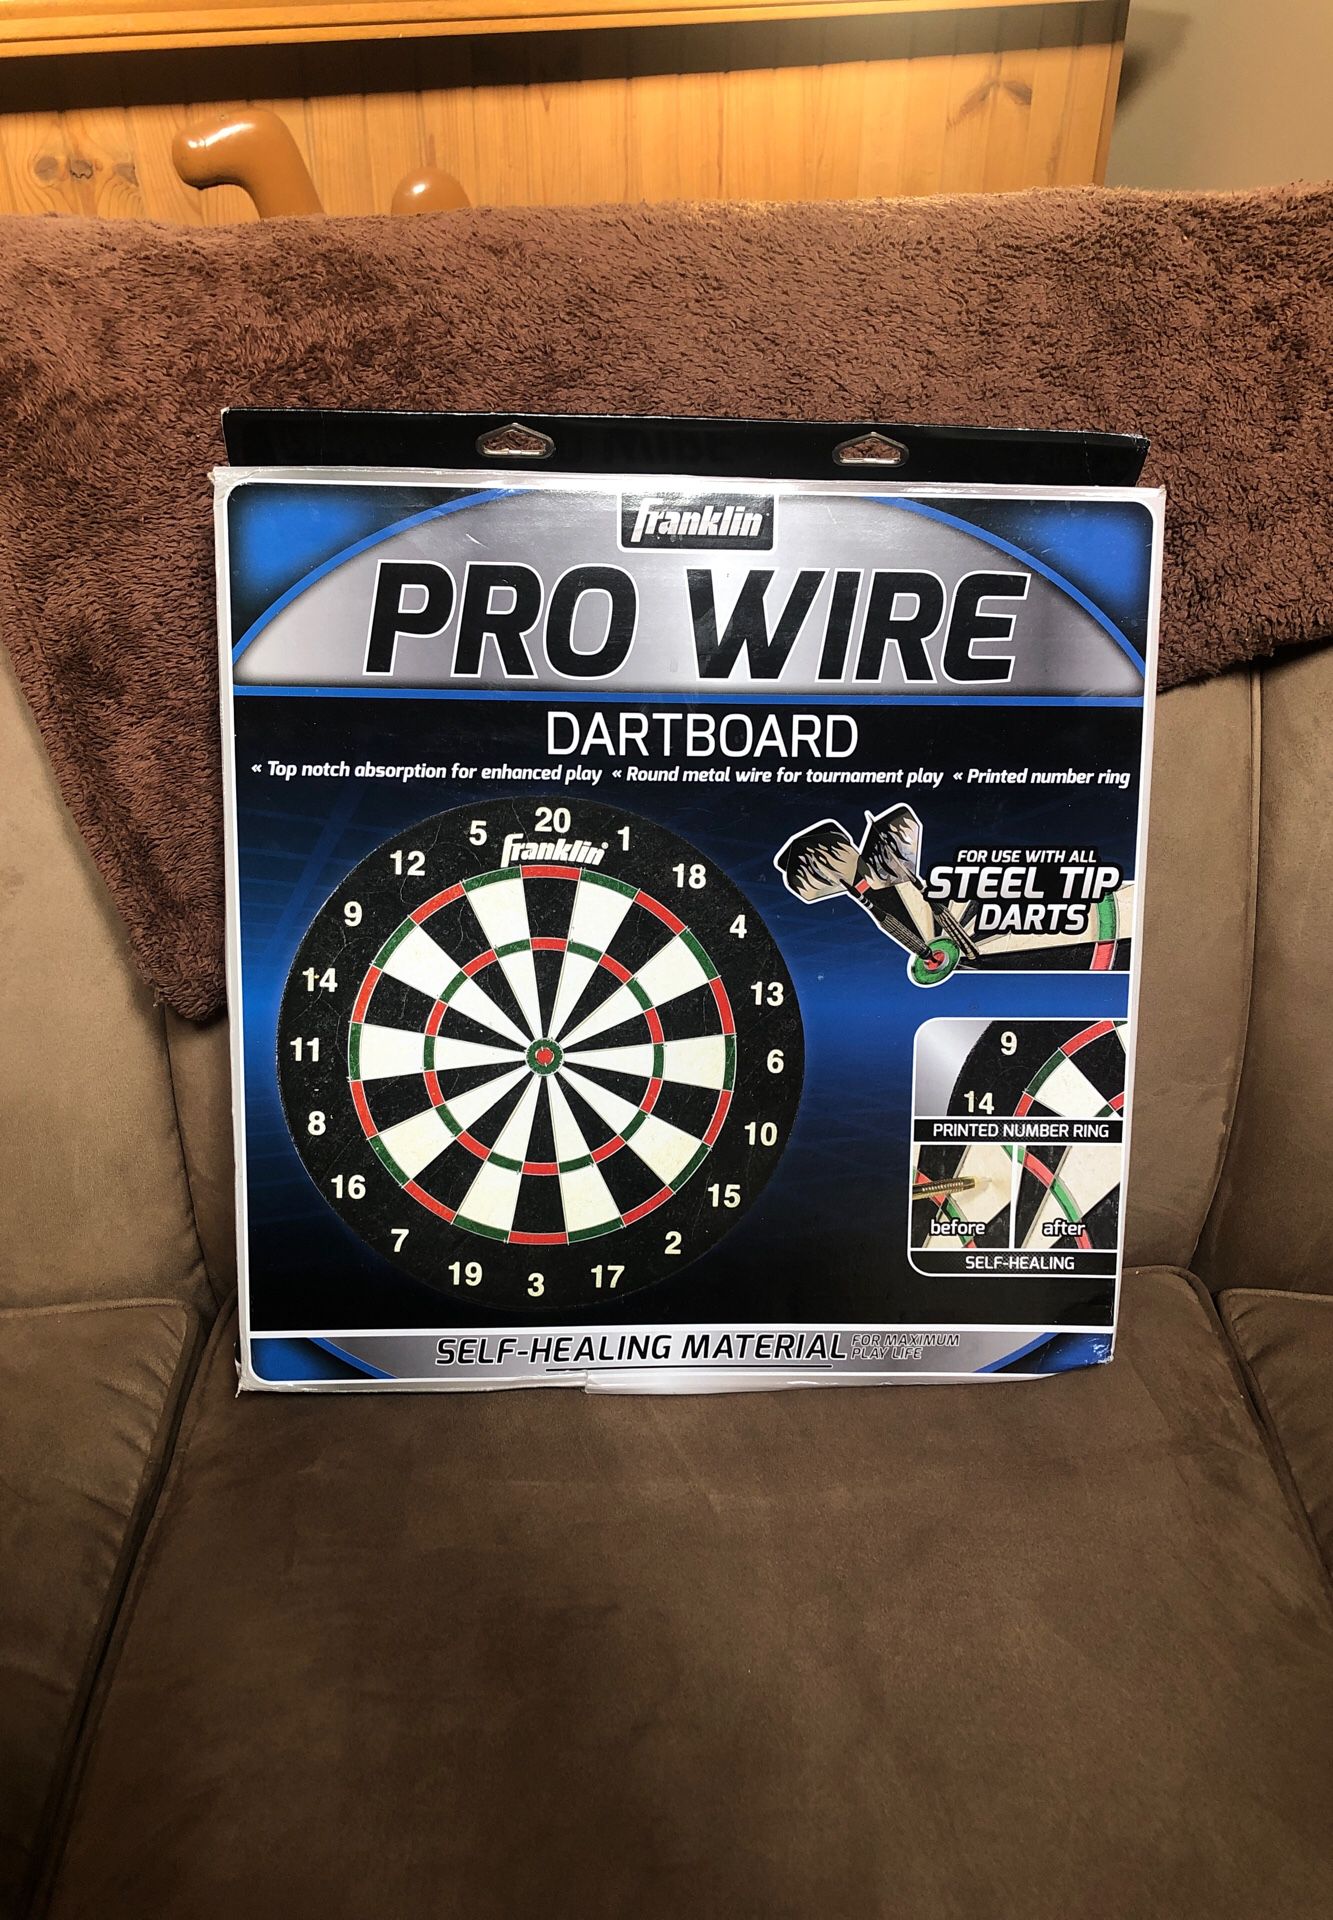 Pro Wire Dart board